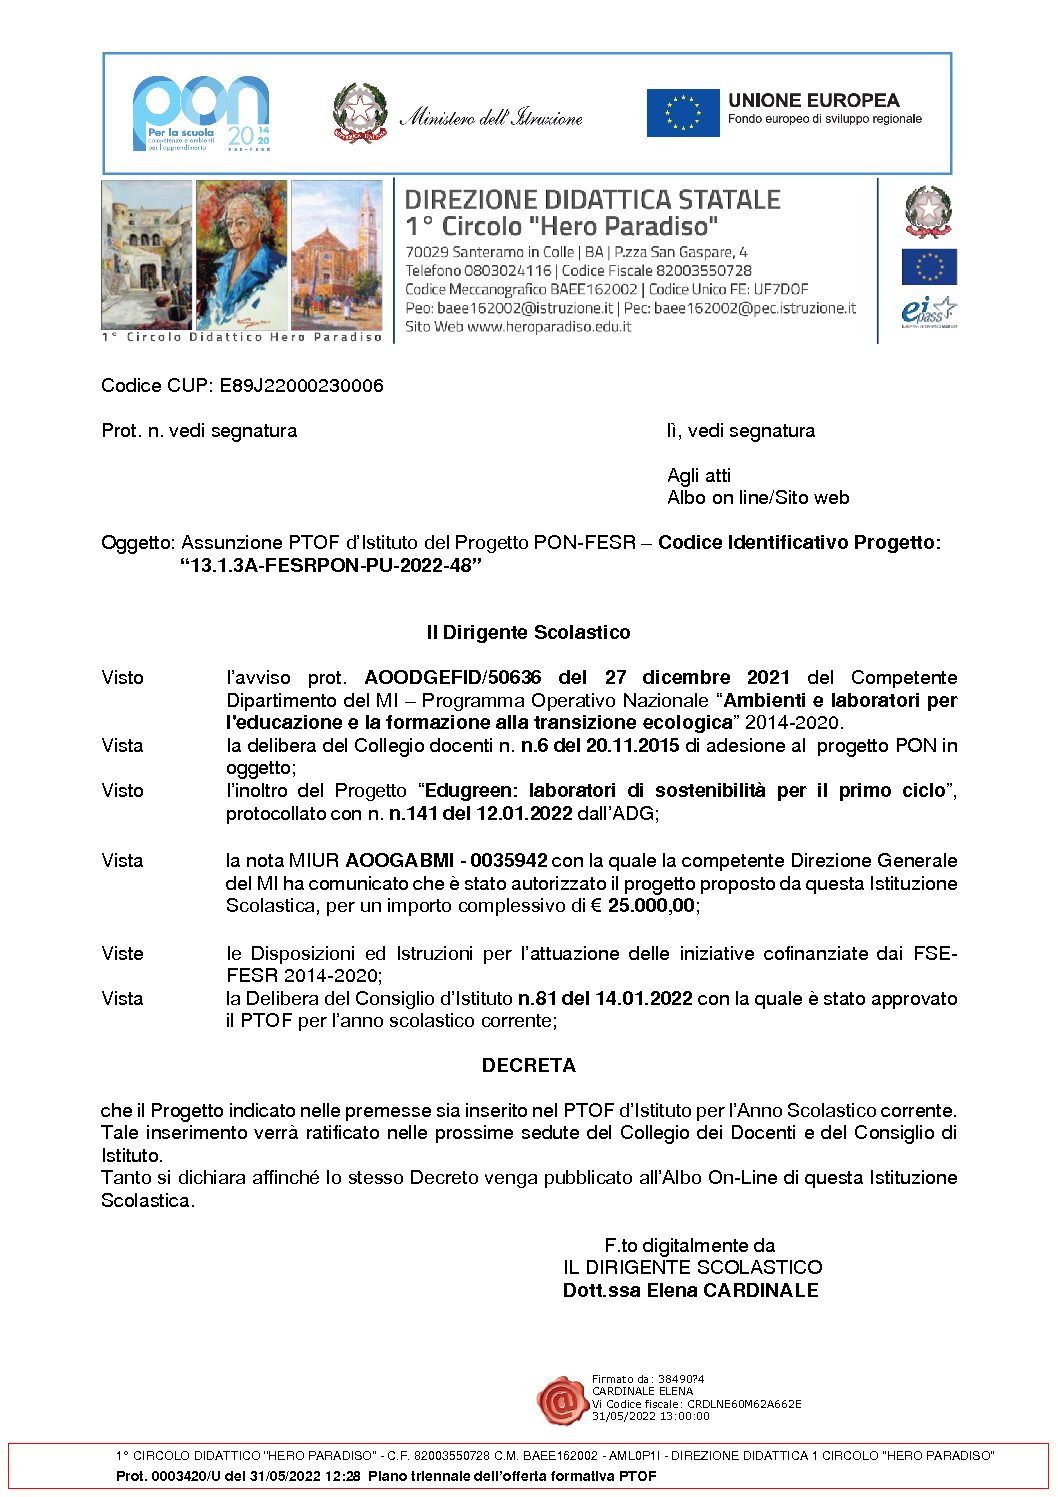 Decreto_assunzione_PTOF_PON_2022-48.pdf.pades